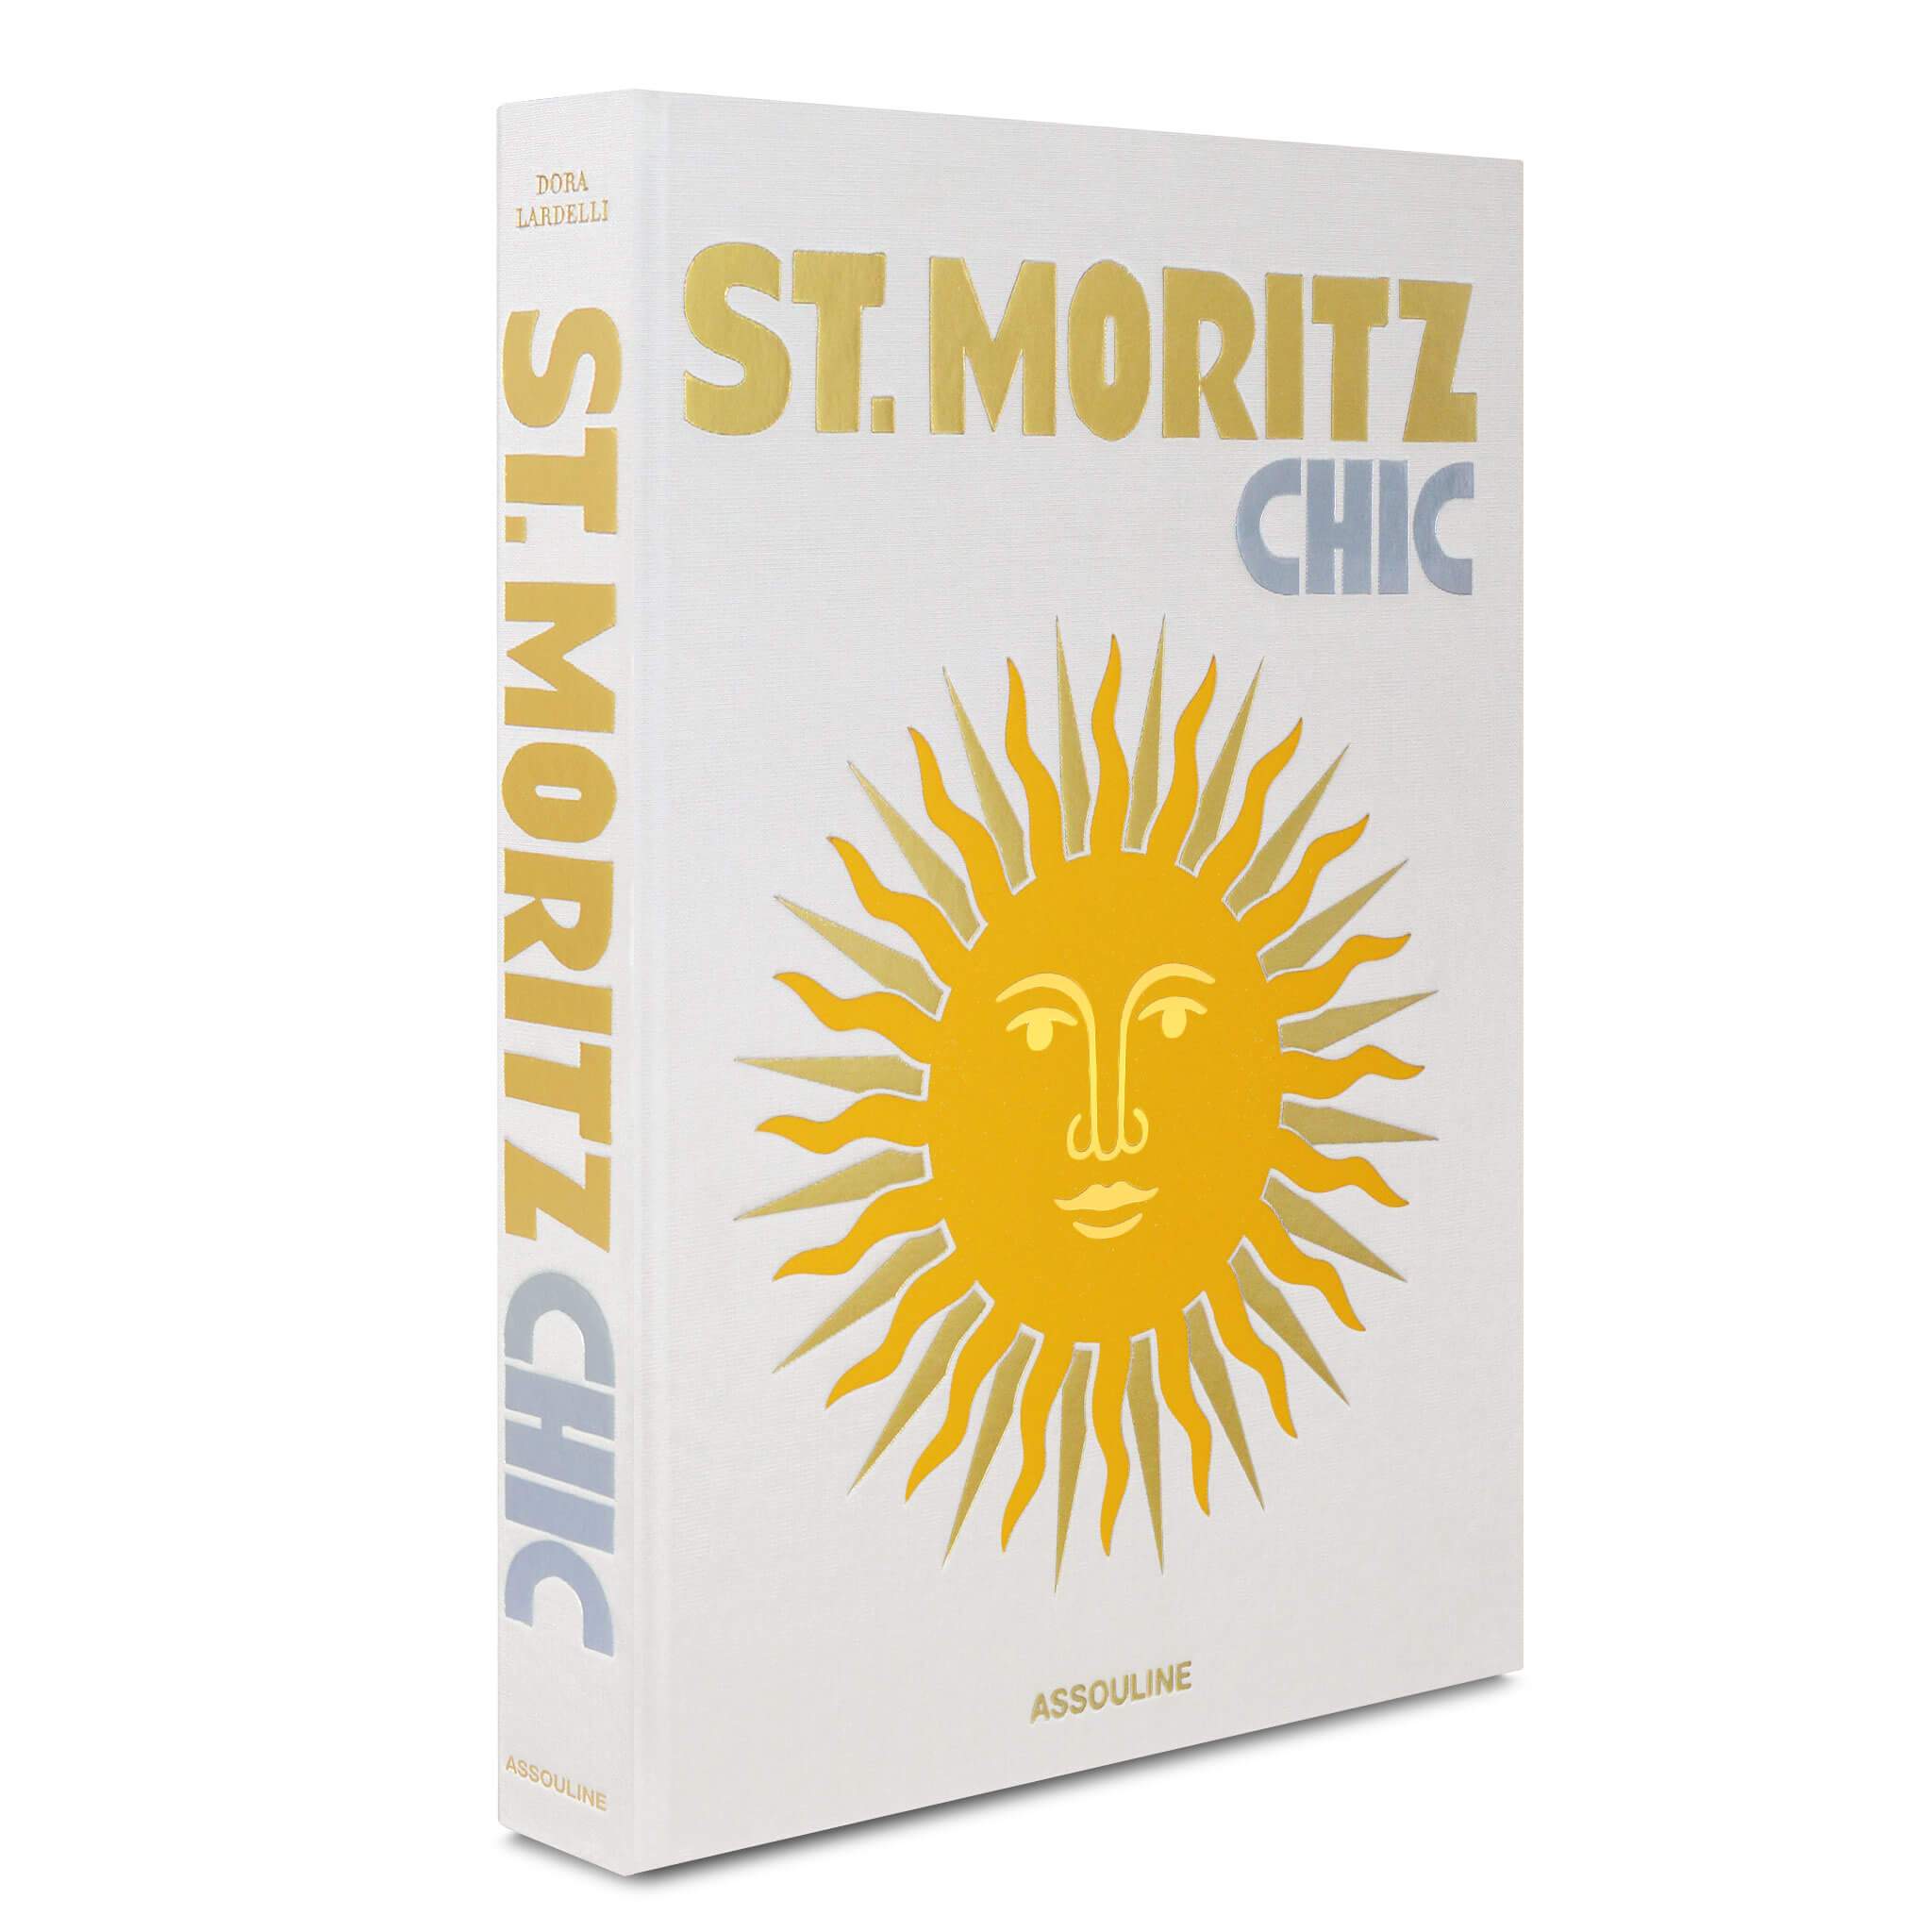 ST MORITZ CHIC de Assouline, libro decorativo sobre viajes por la isla